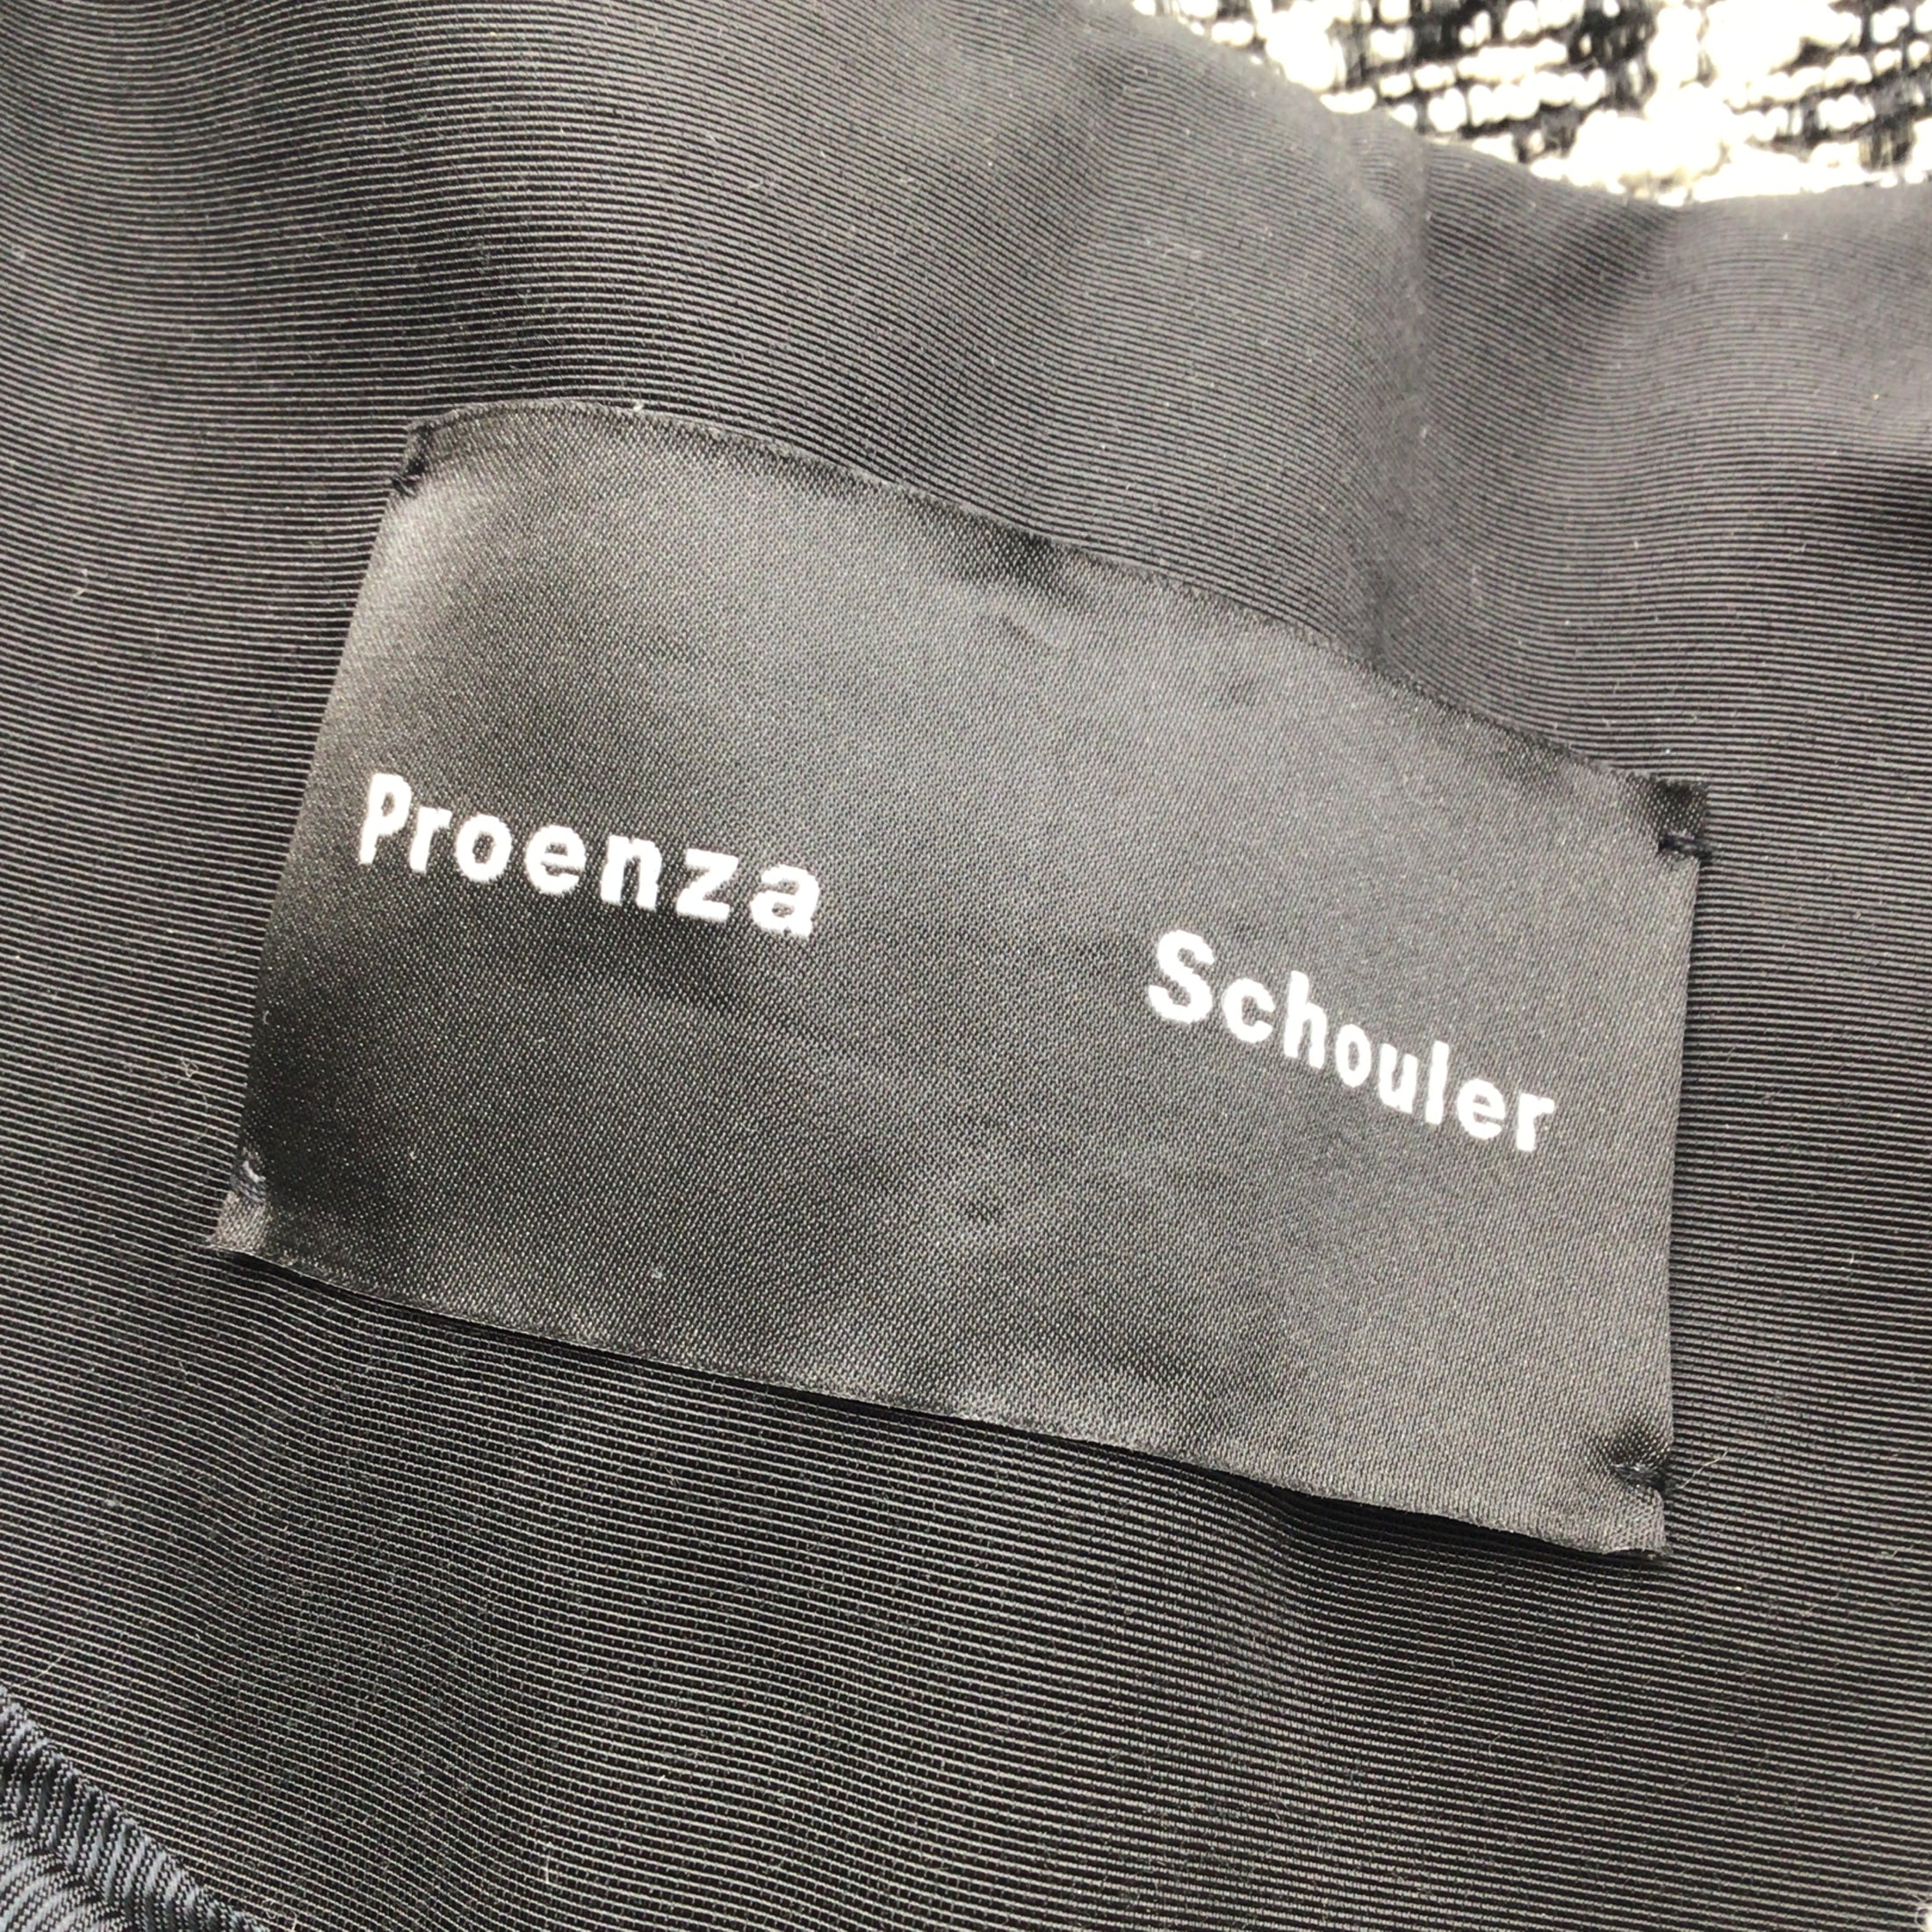 Proenza Schouler Black / Ivory Woven Tweed Jacket